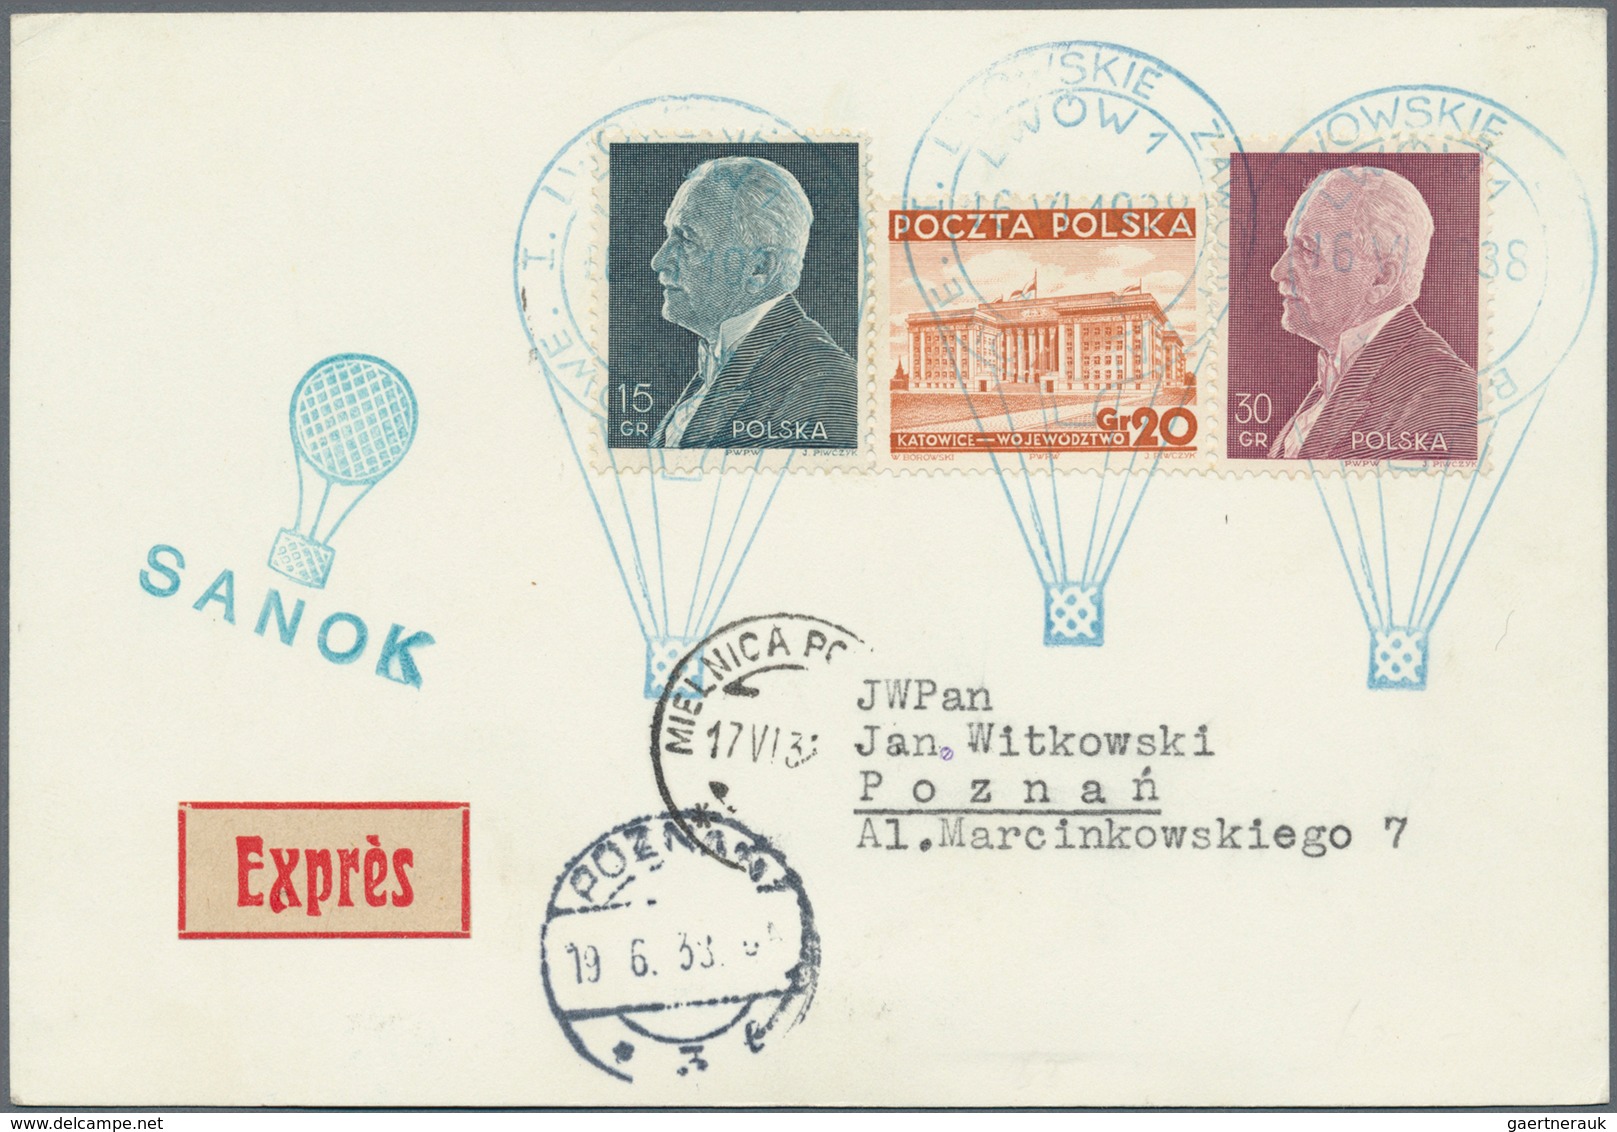 Ballonpost: 1938, 16.VI., Poland, complete set of six balloon cards/cover: balloons "Sanok", "Mościc